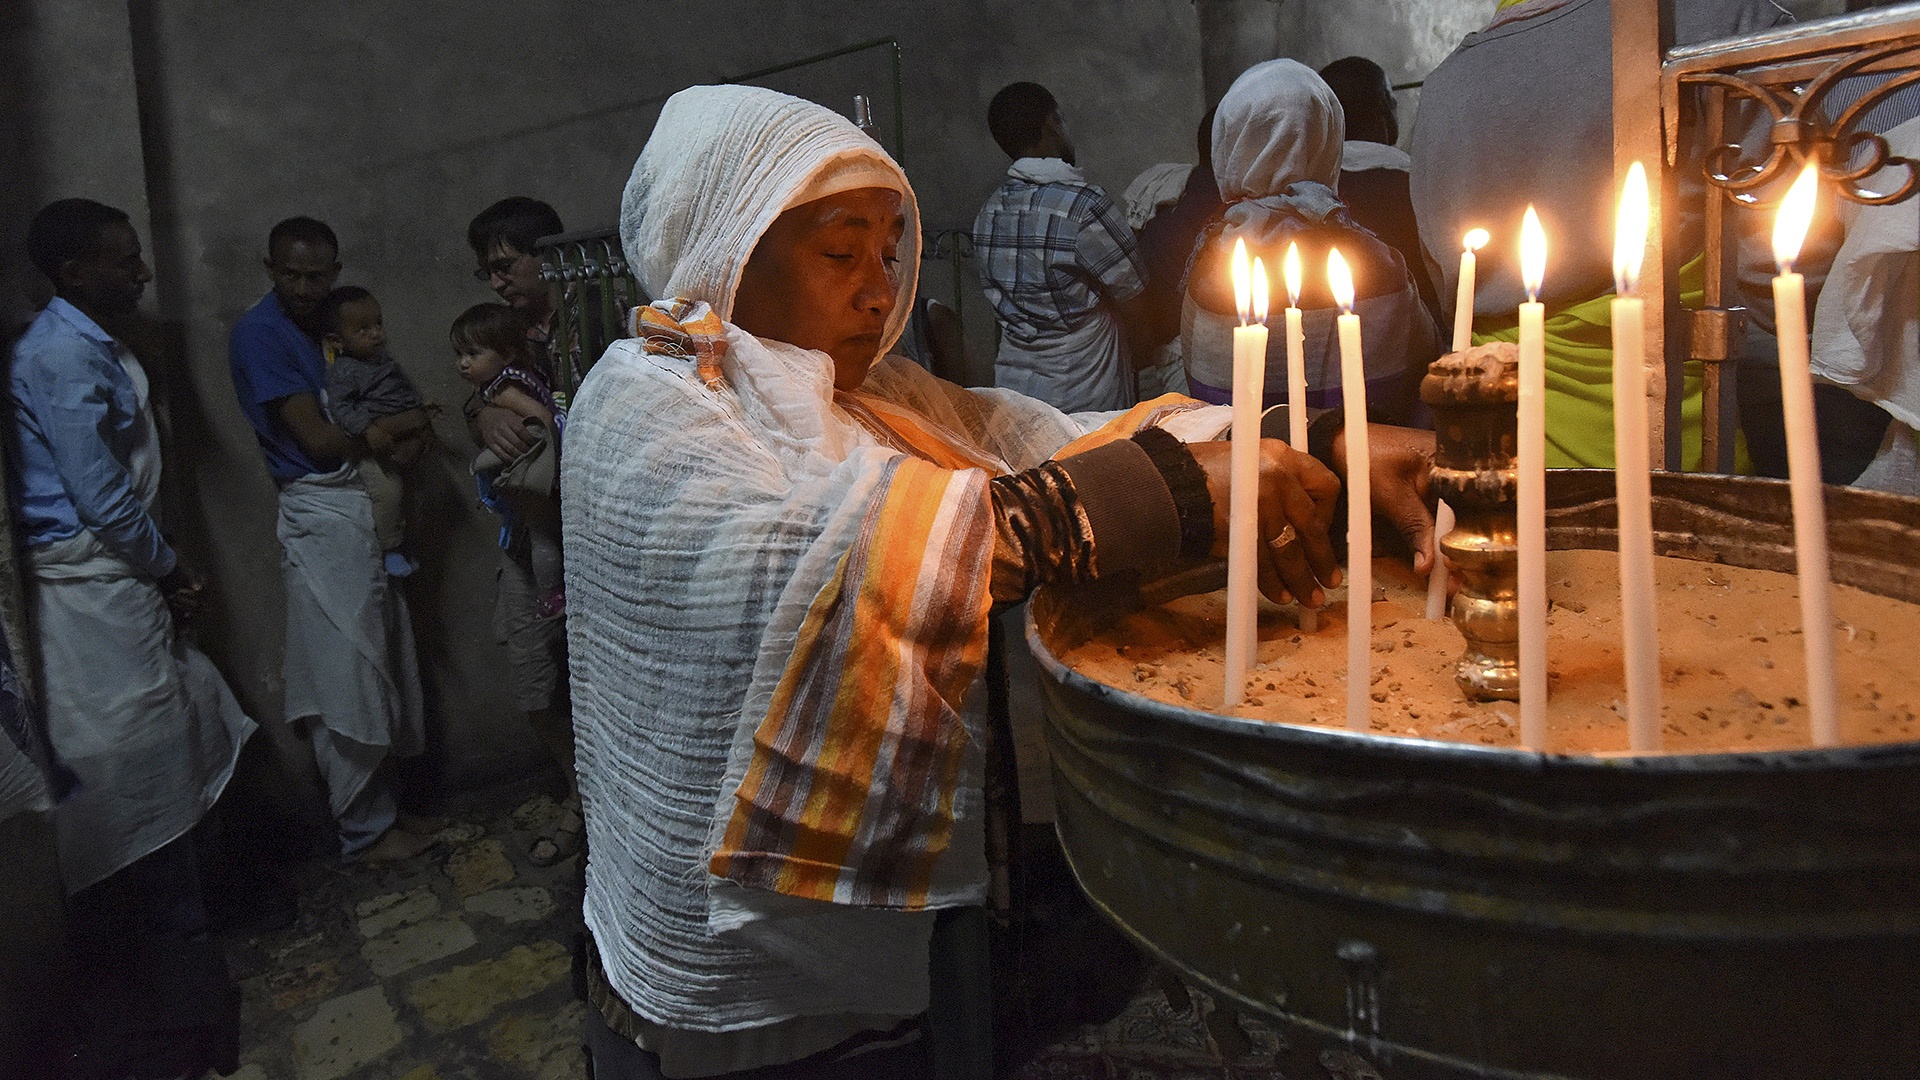 Äthiopische Christen zünden Kerzen in der Grabeskirche in Jerusalem